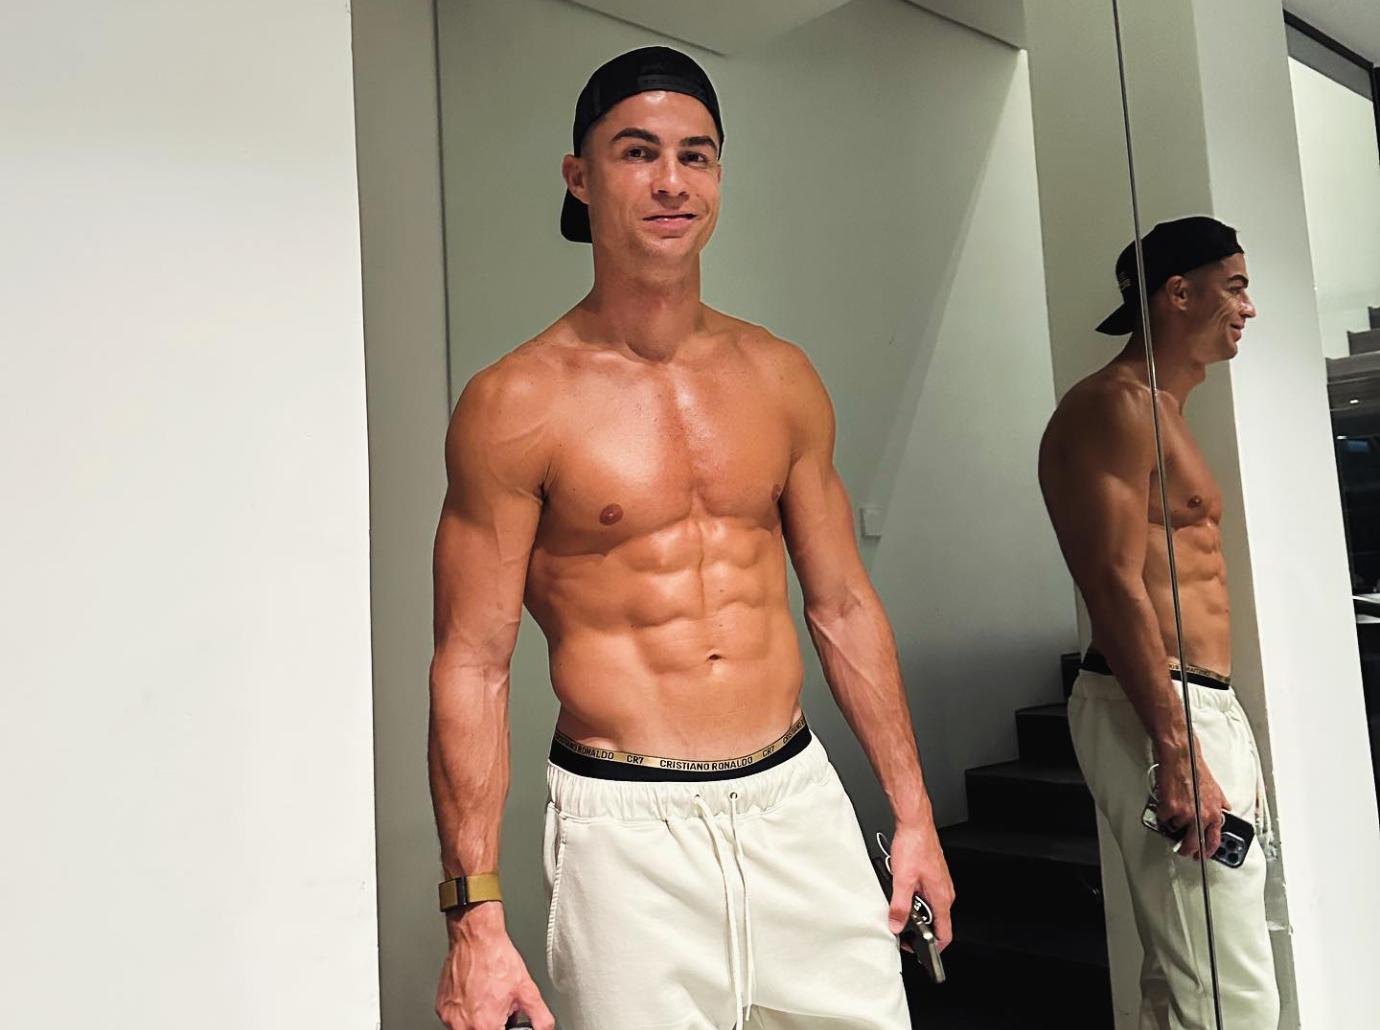 Cristiano Ronaldo & Son Cristiano Jr. Go Shirtless For Workout: Photo